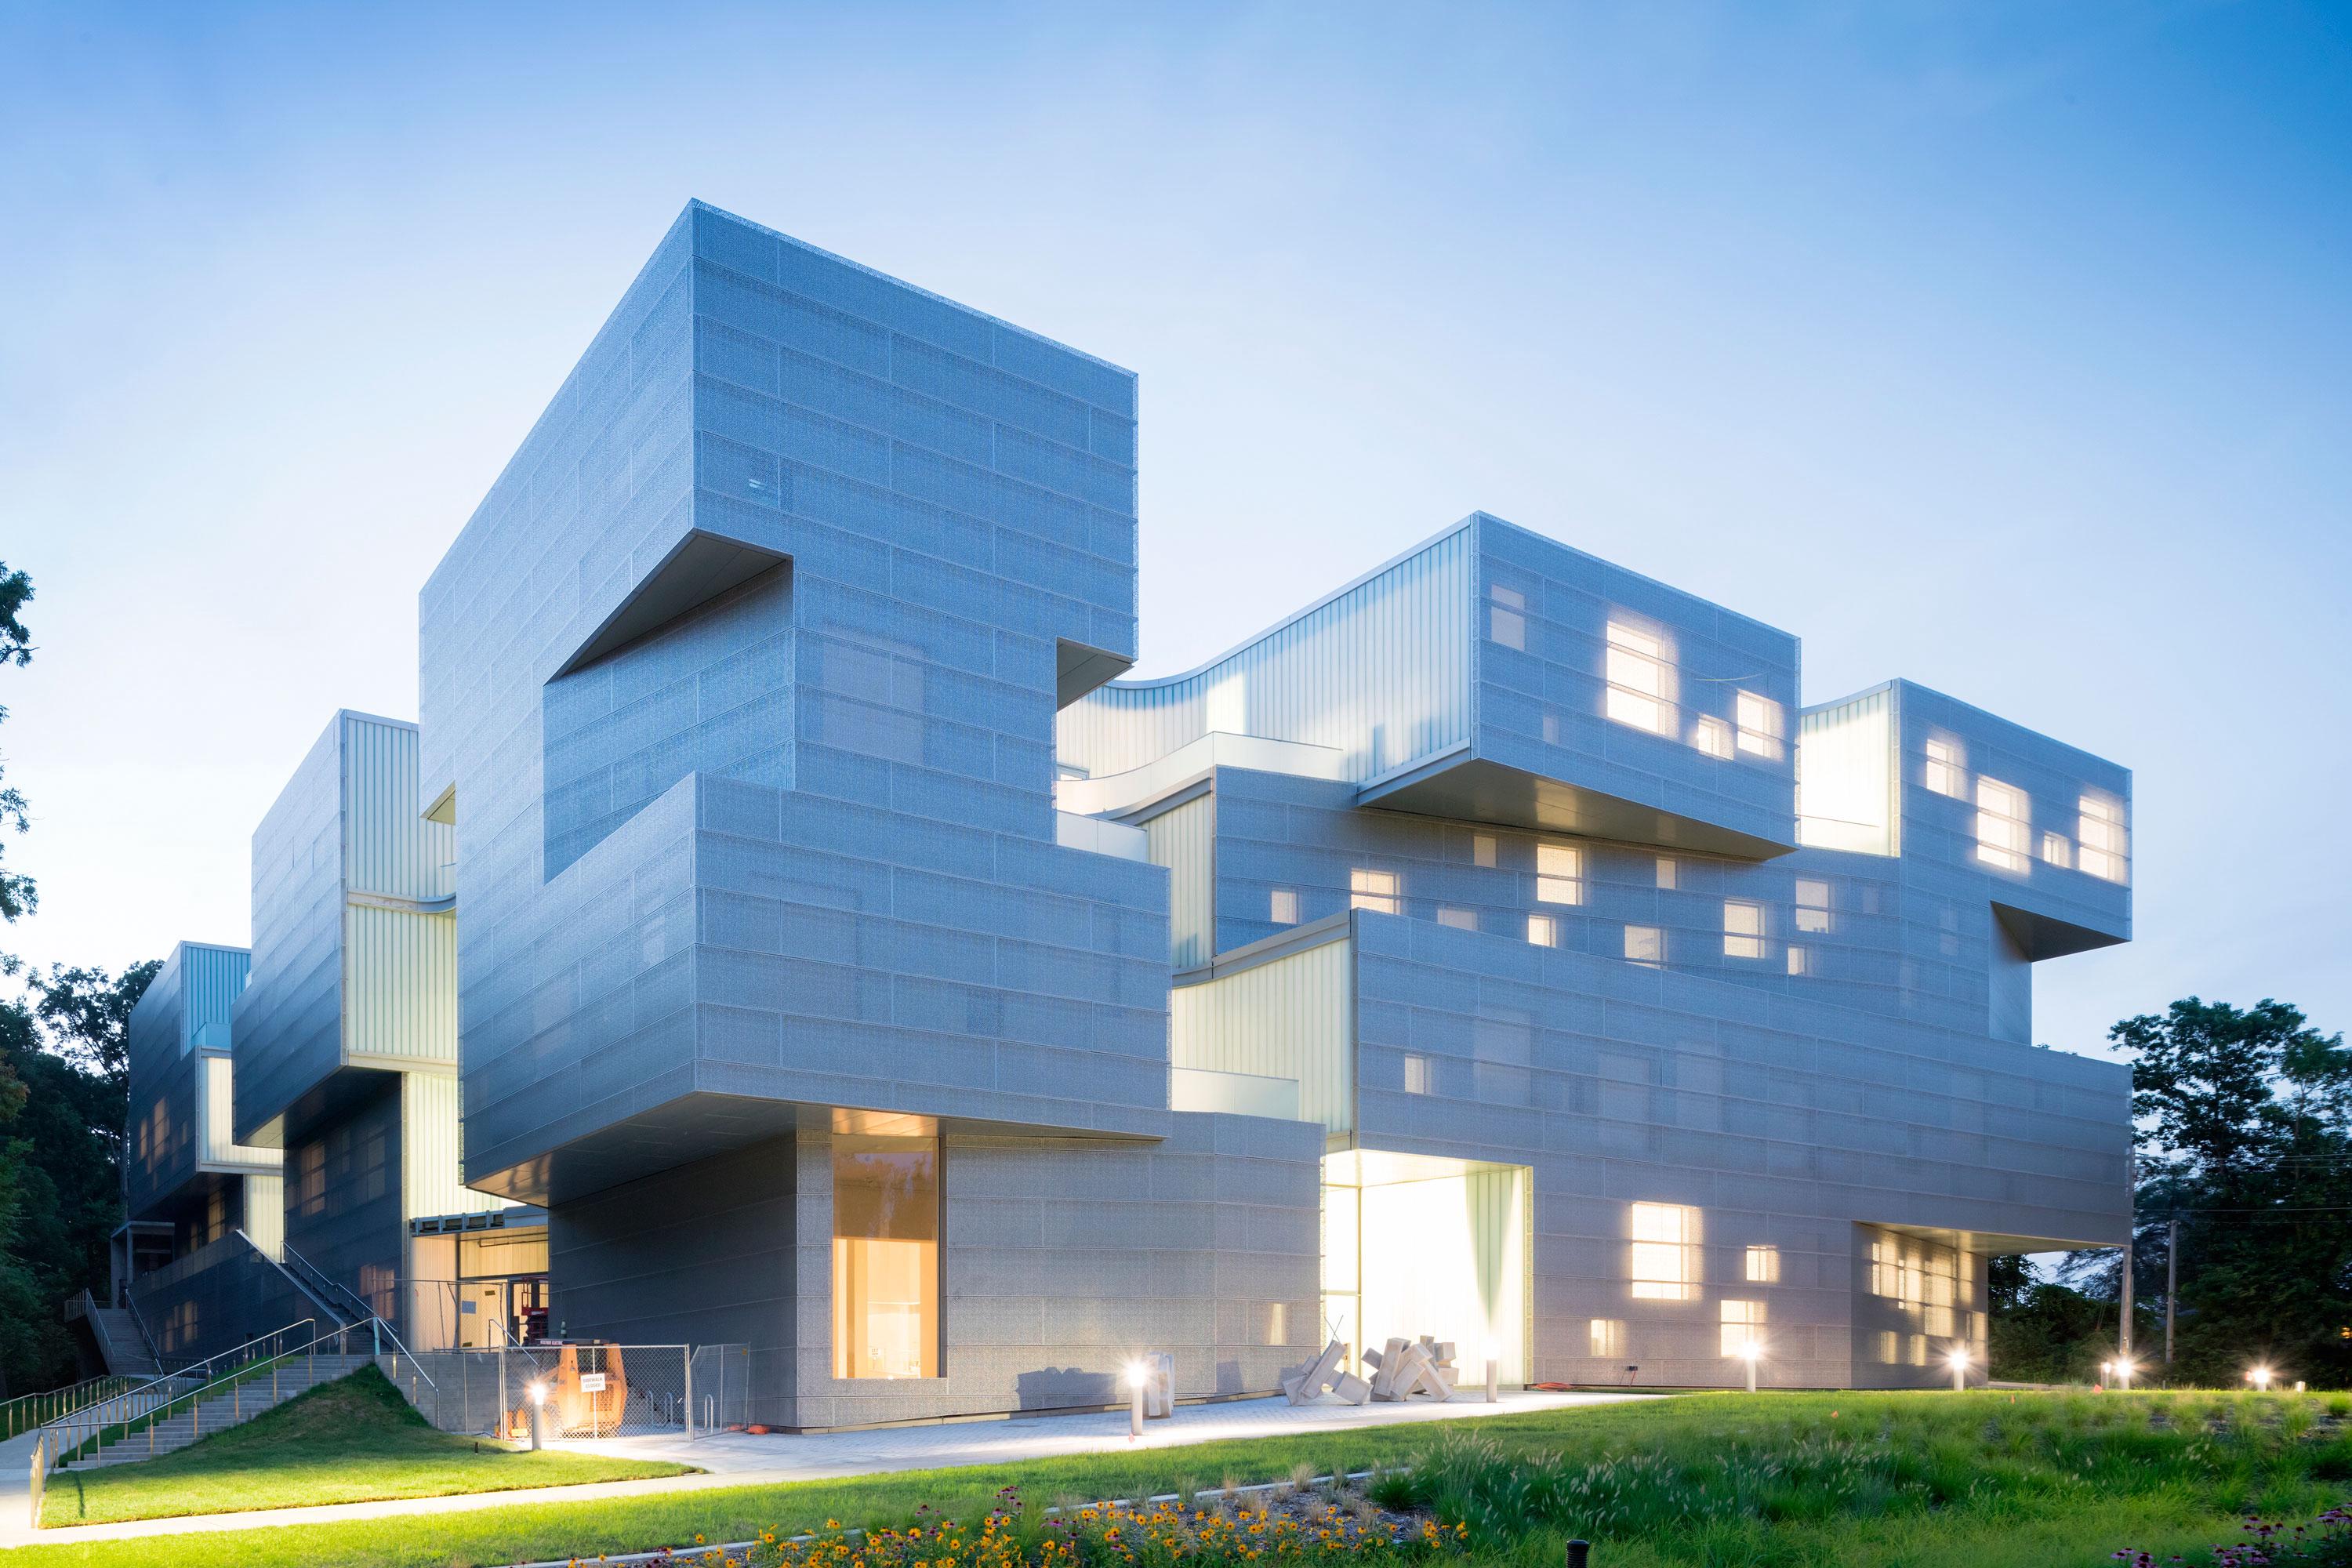 Architecture universities. Здание изобразительного искусства в университете Айовы / Steven Holl Architects. Корпус изобразительных искусств университета Айовы.